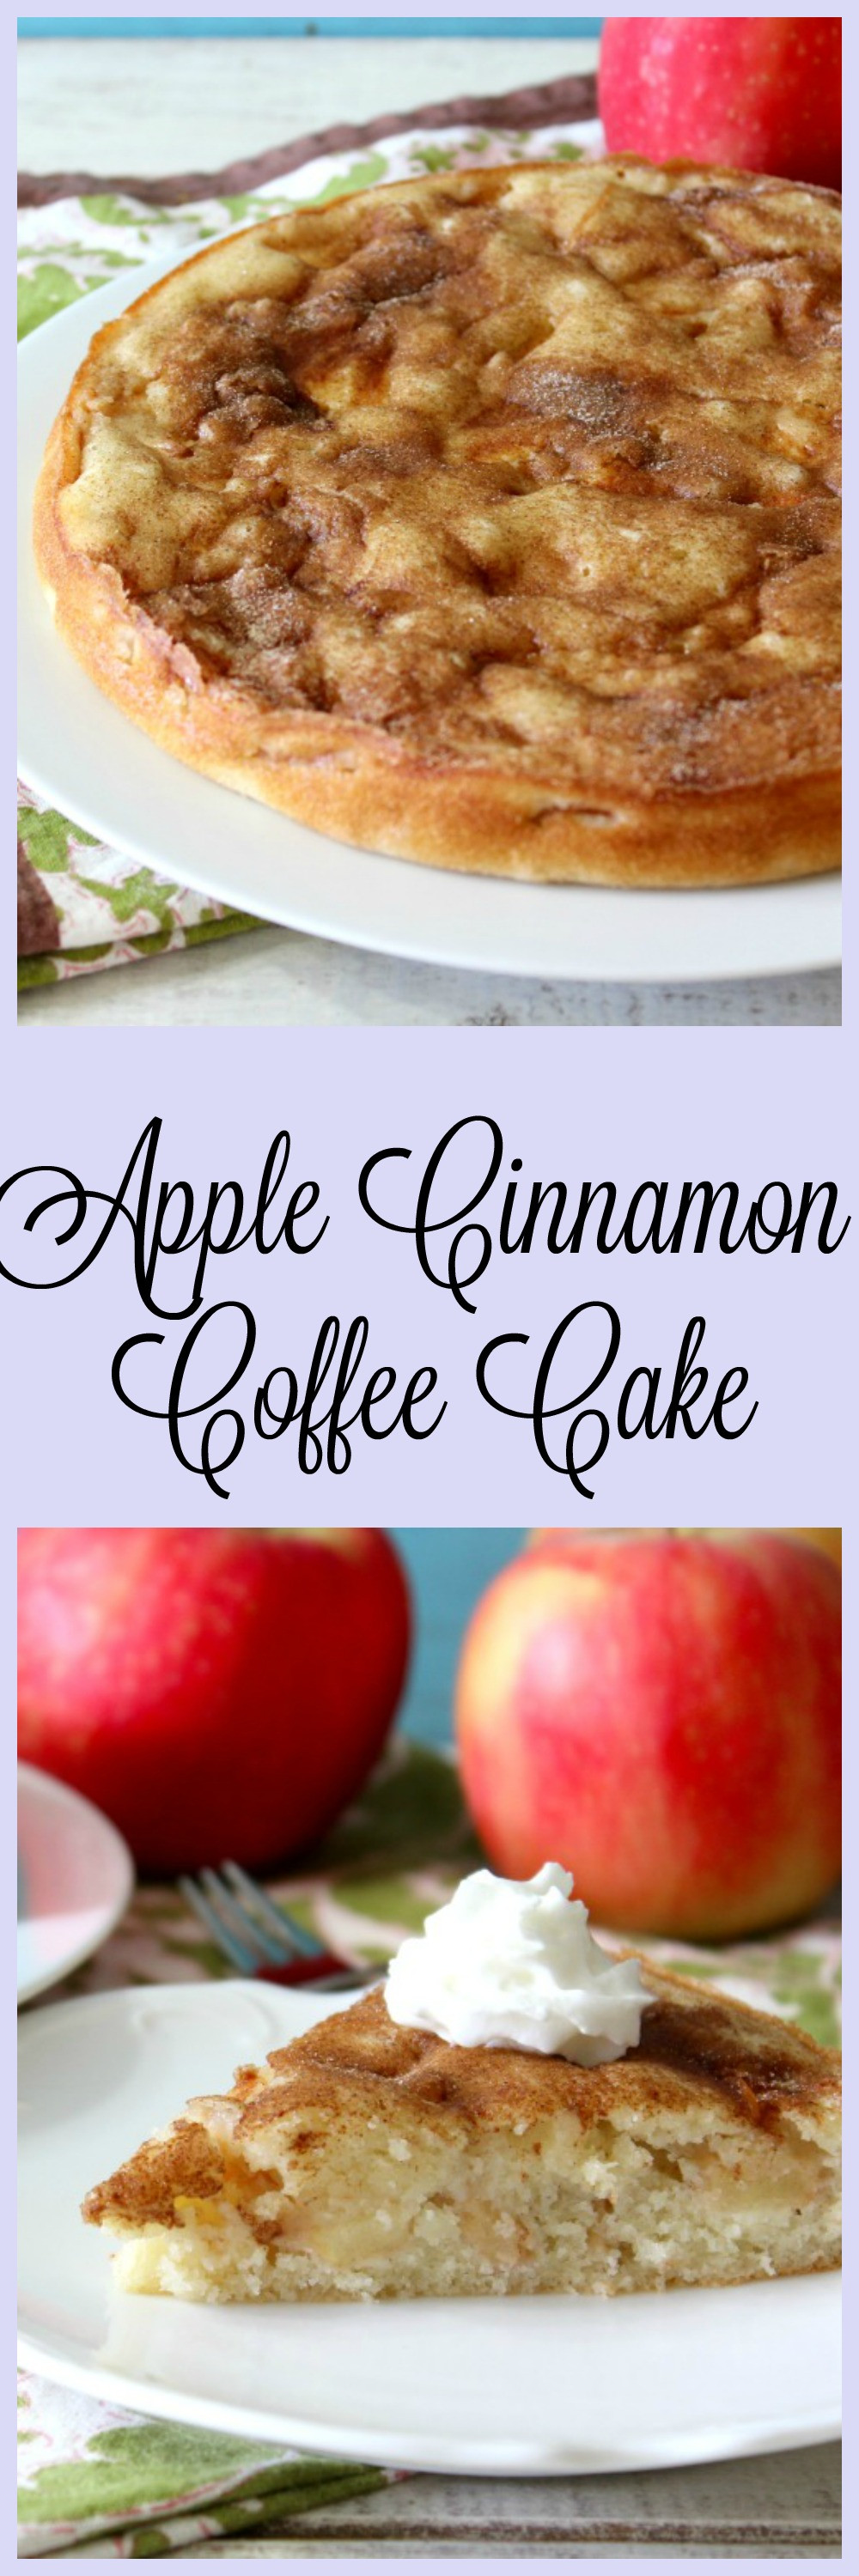 Apple Cinnamon Coffee Cake
 Apple Cinnamon Coffee Cake